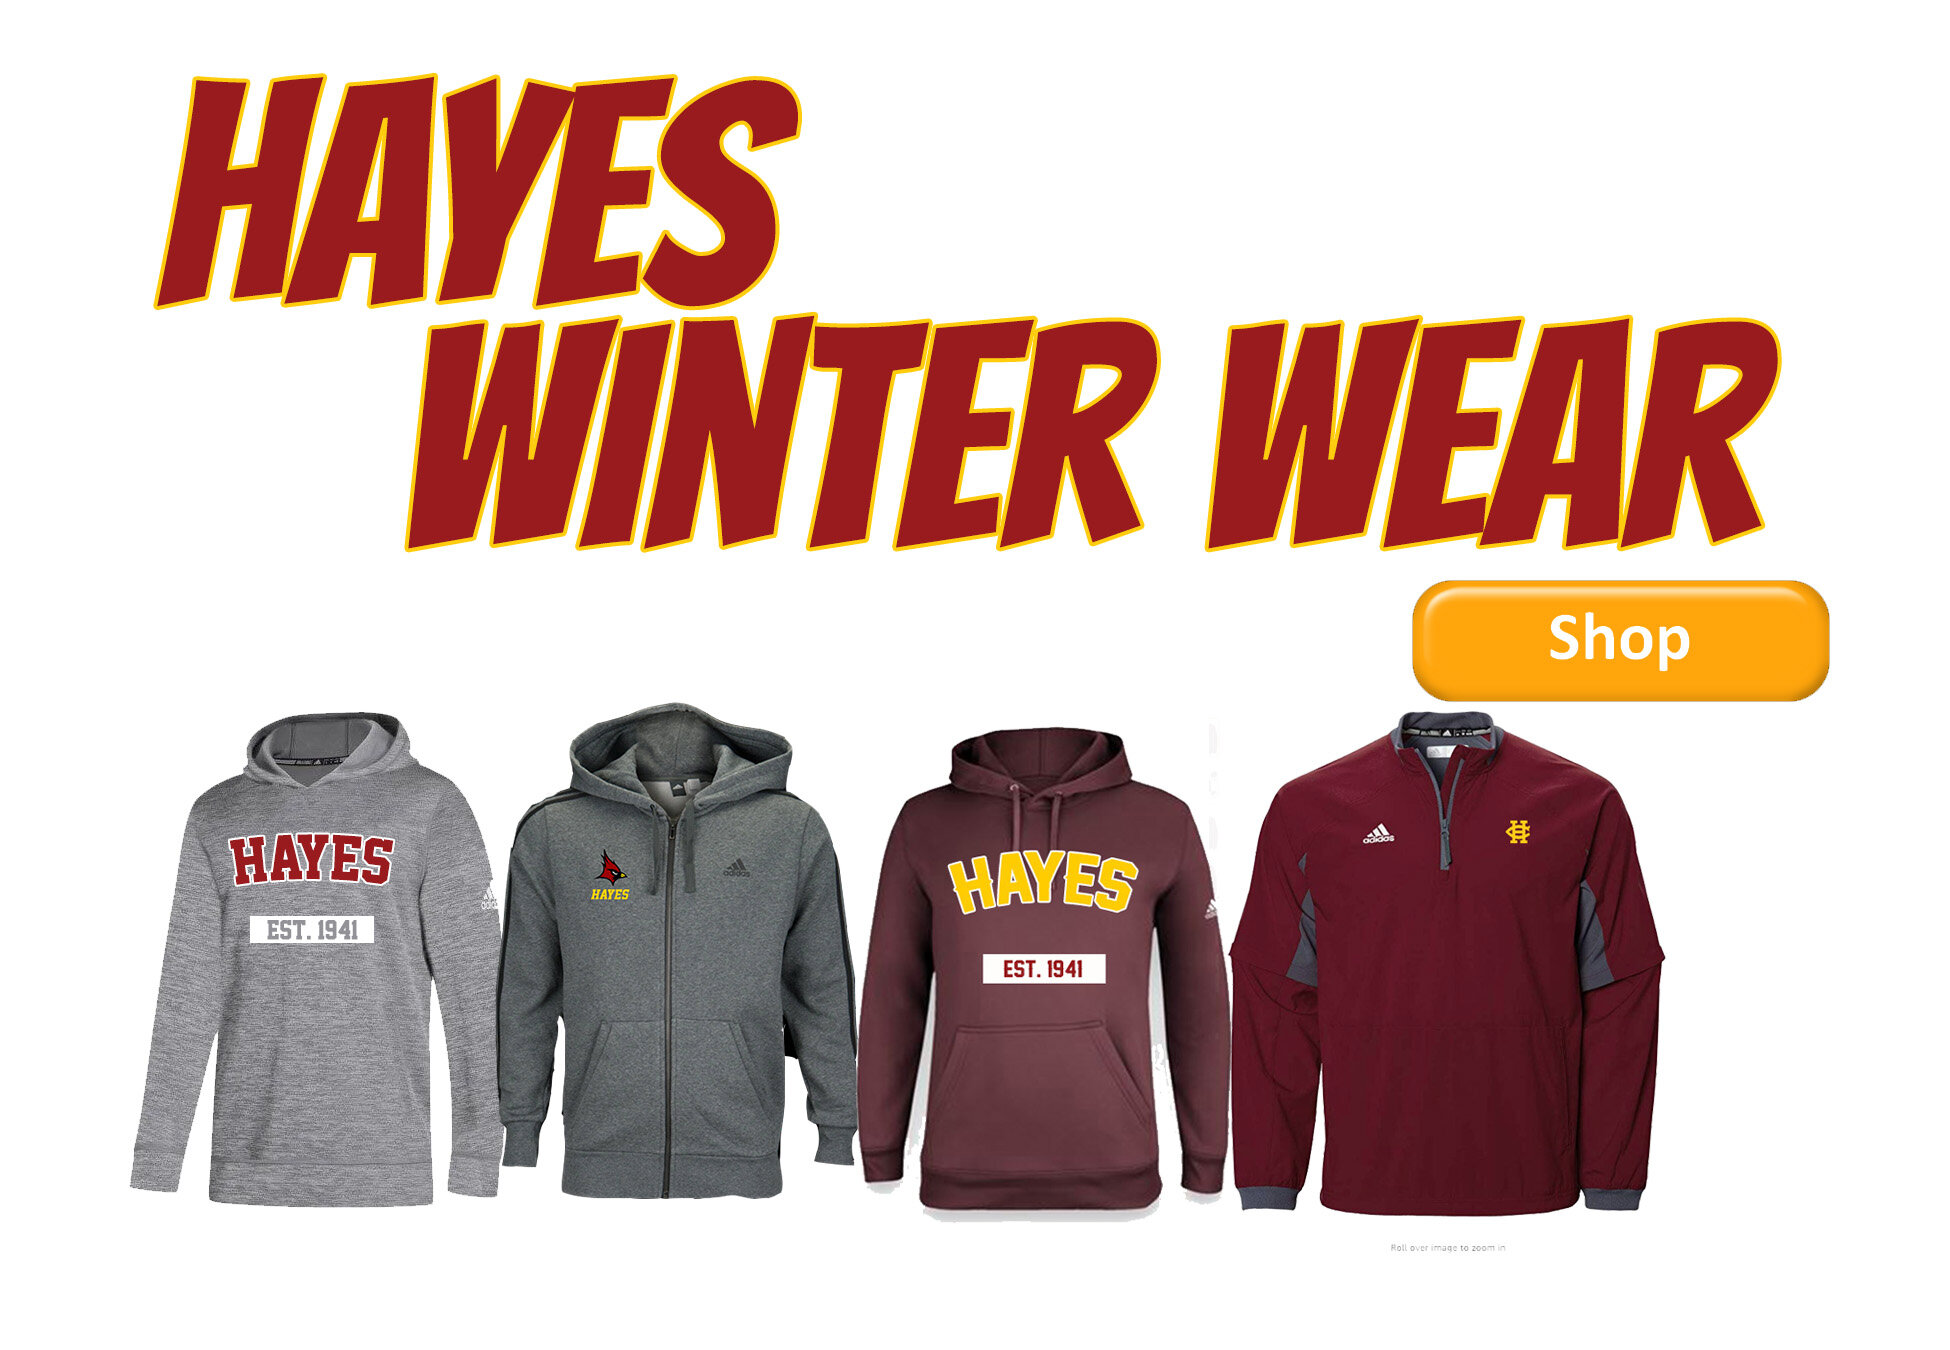 Hayes winter wear slide.jpg